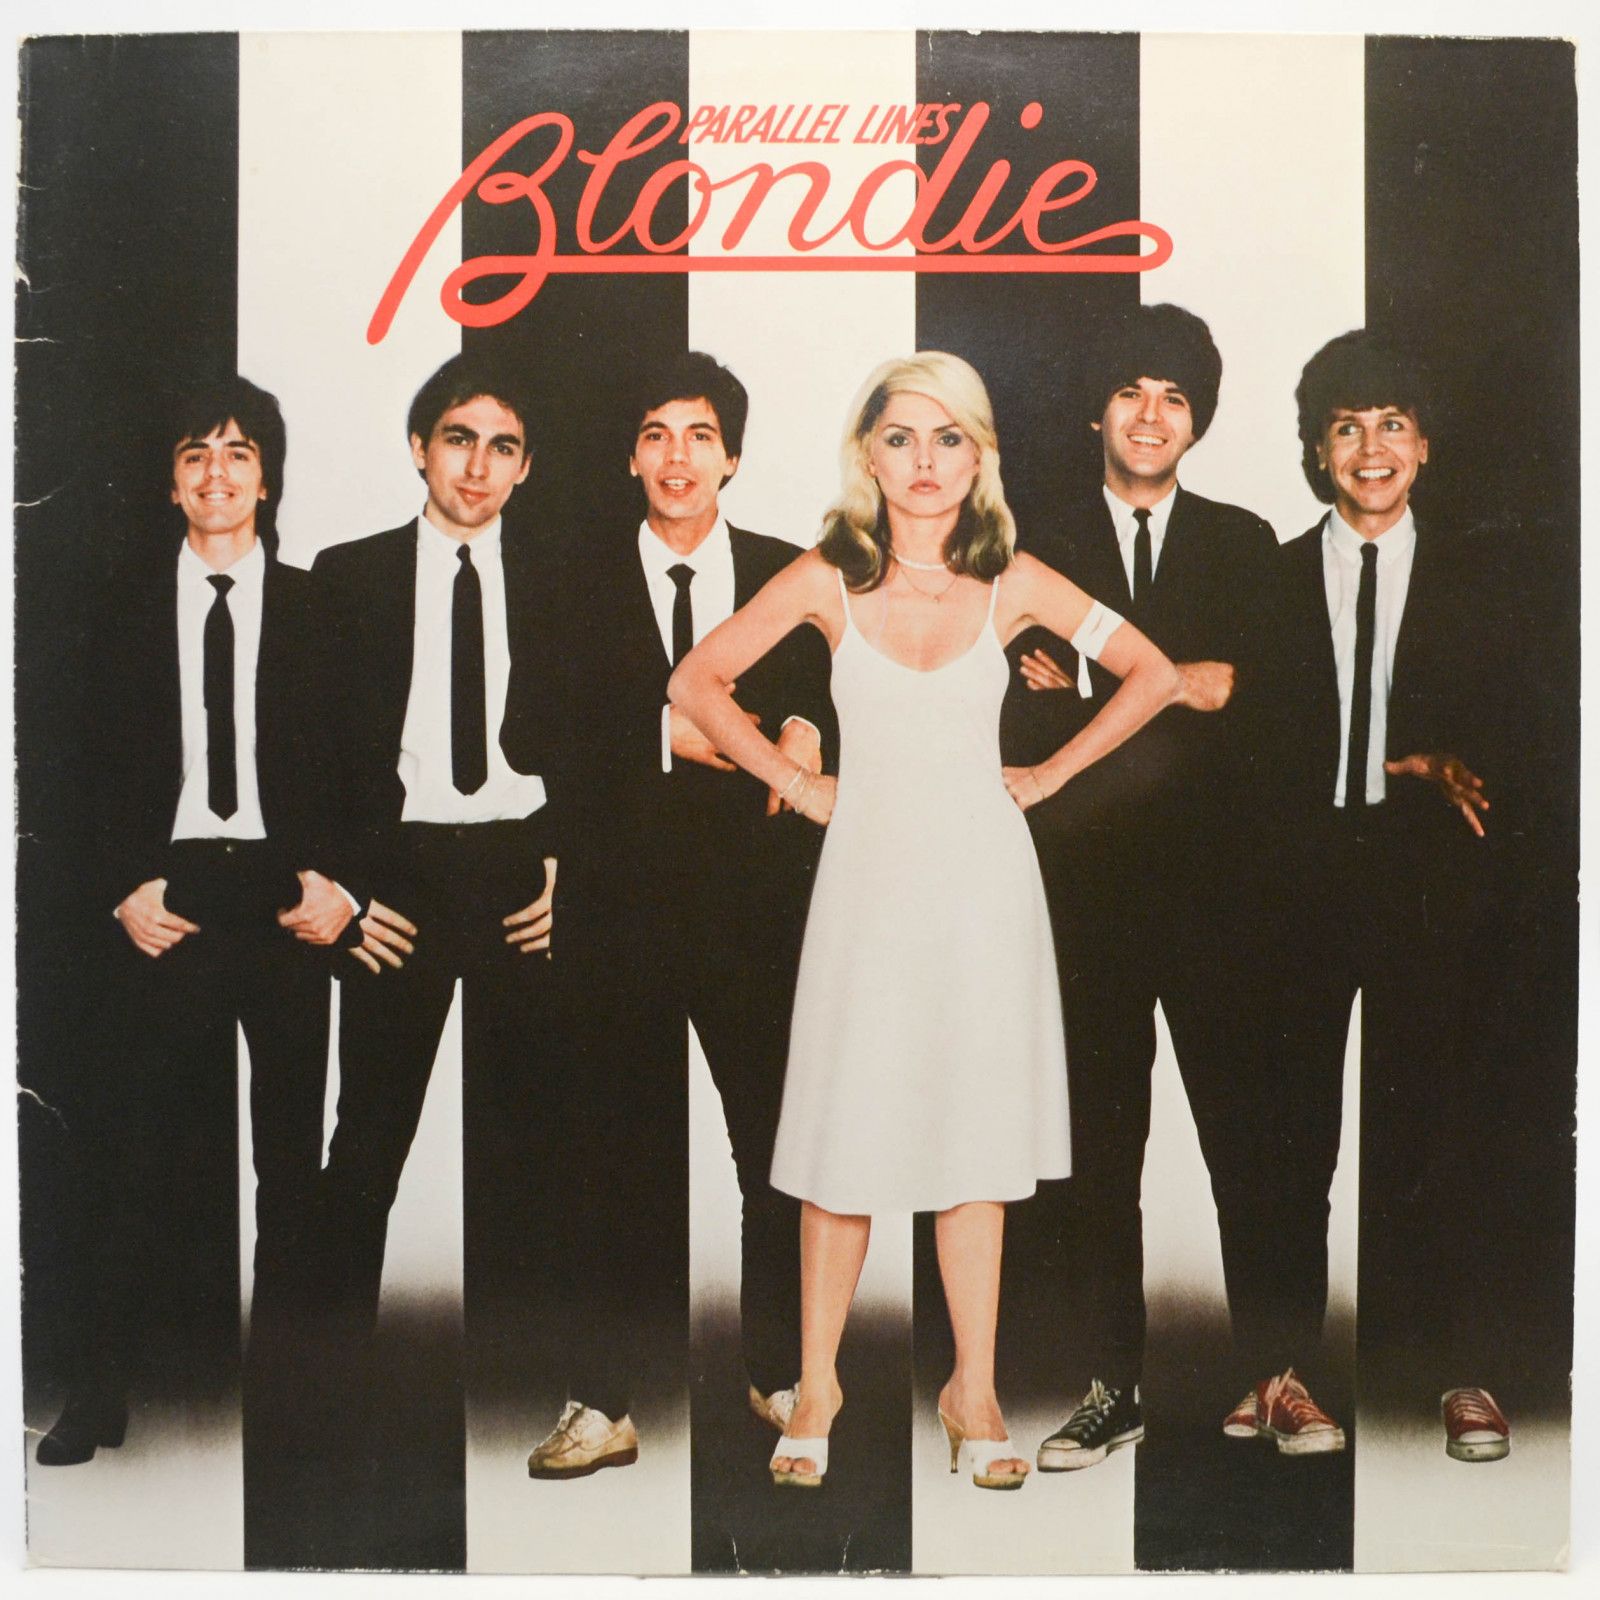 Blondie — Parallel Lines, 1980